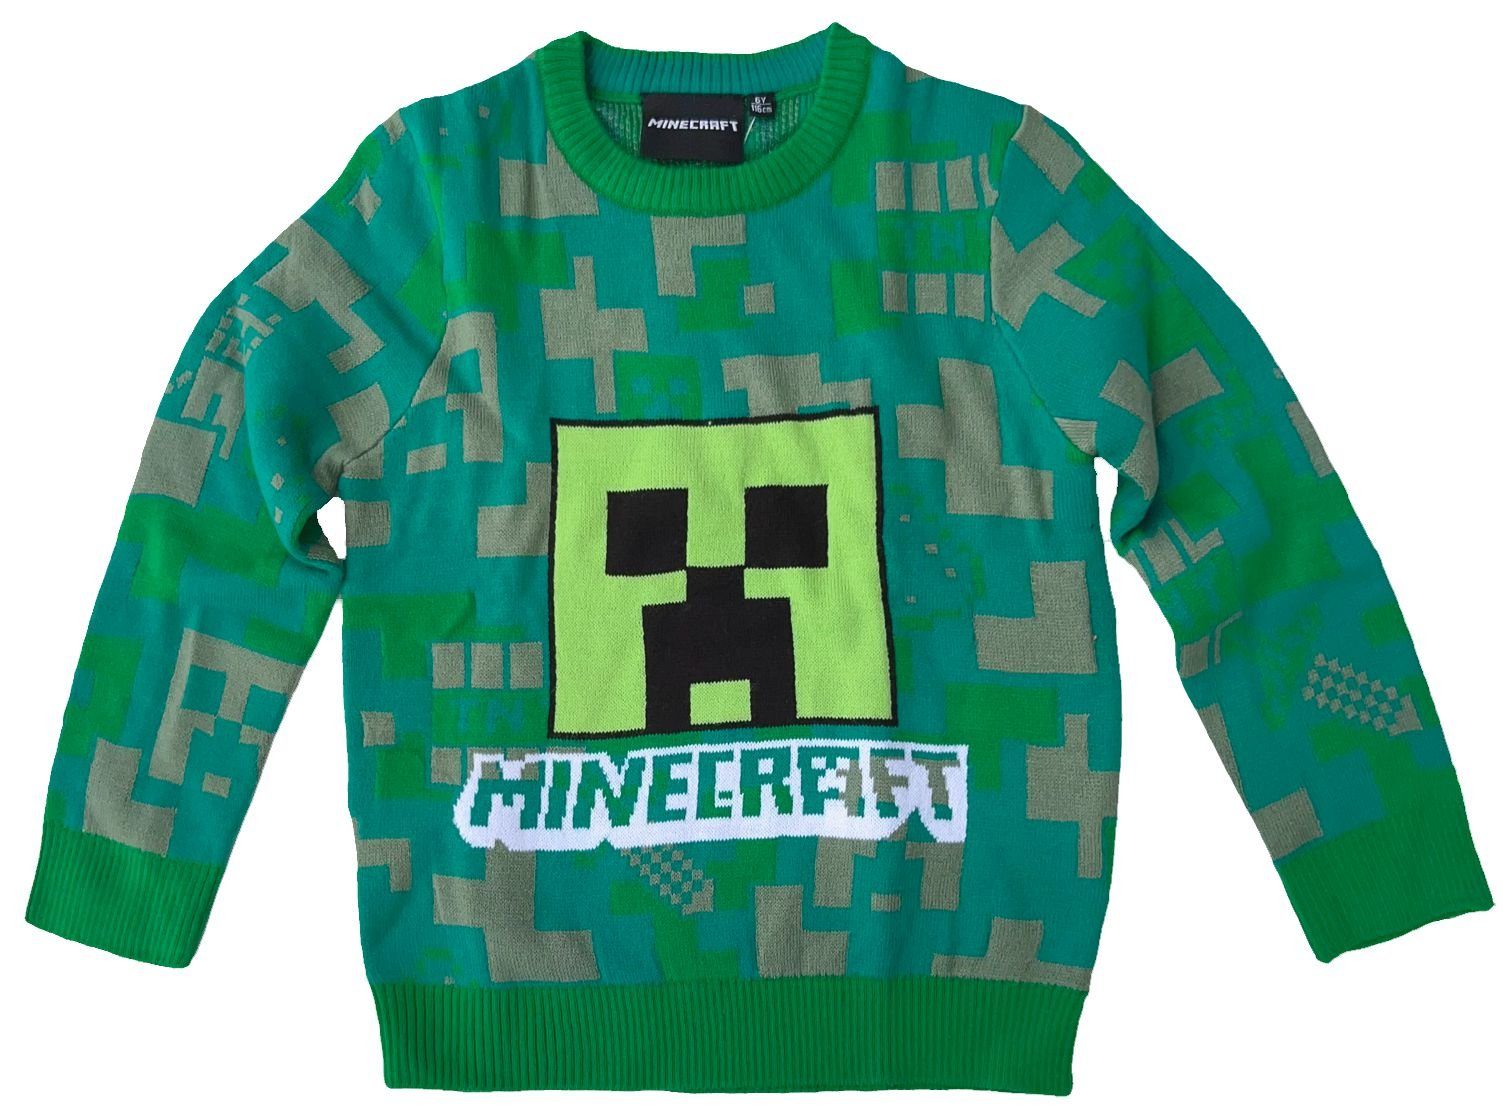 Minecraft Strickpullover MINECRAFT Kinder Pullover Pulli für Jungen +  Mädchen in grau oder grün Gr. 116 128 134 140 152 für 6 8 9 10 12 Jahre